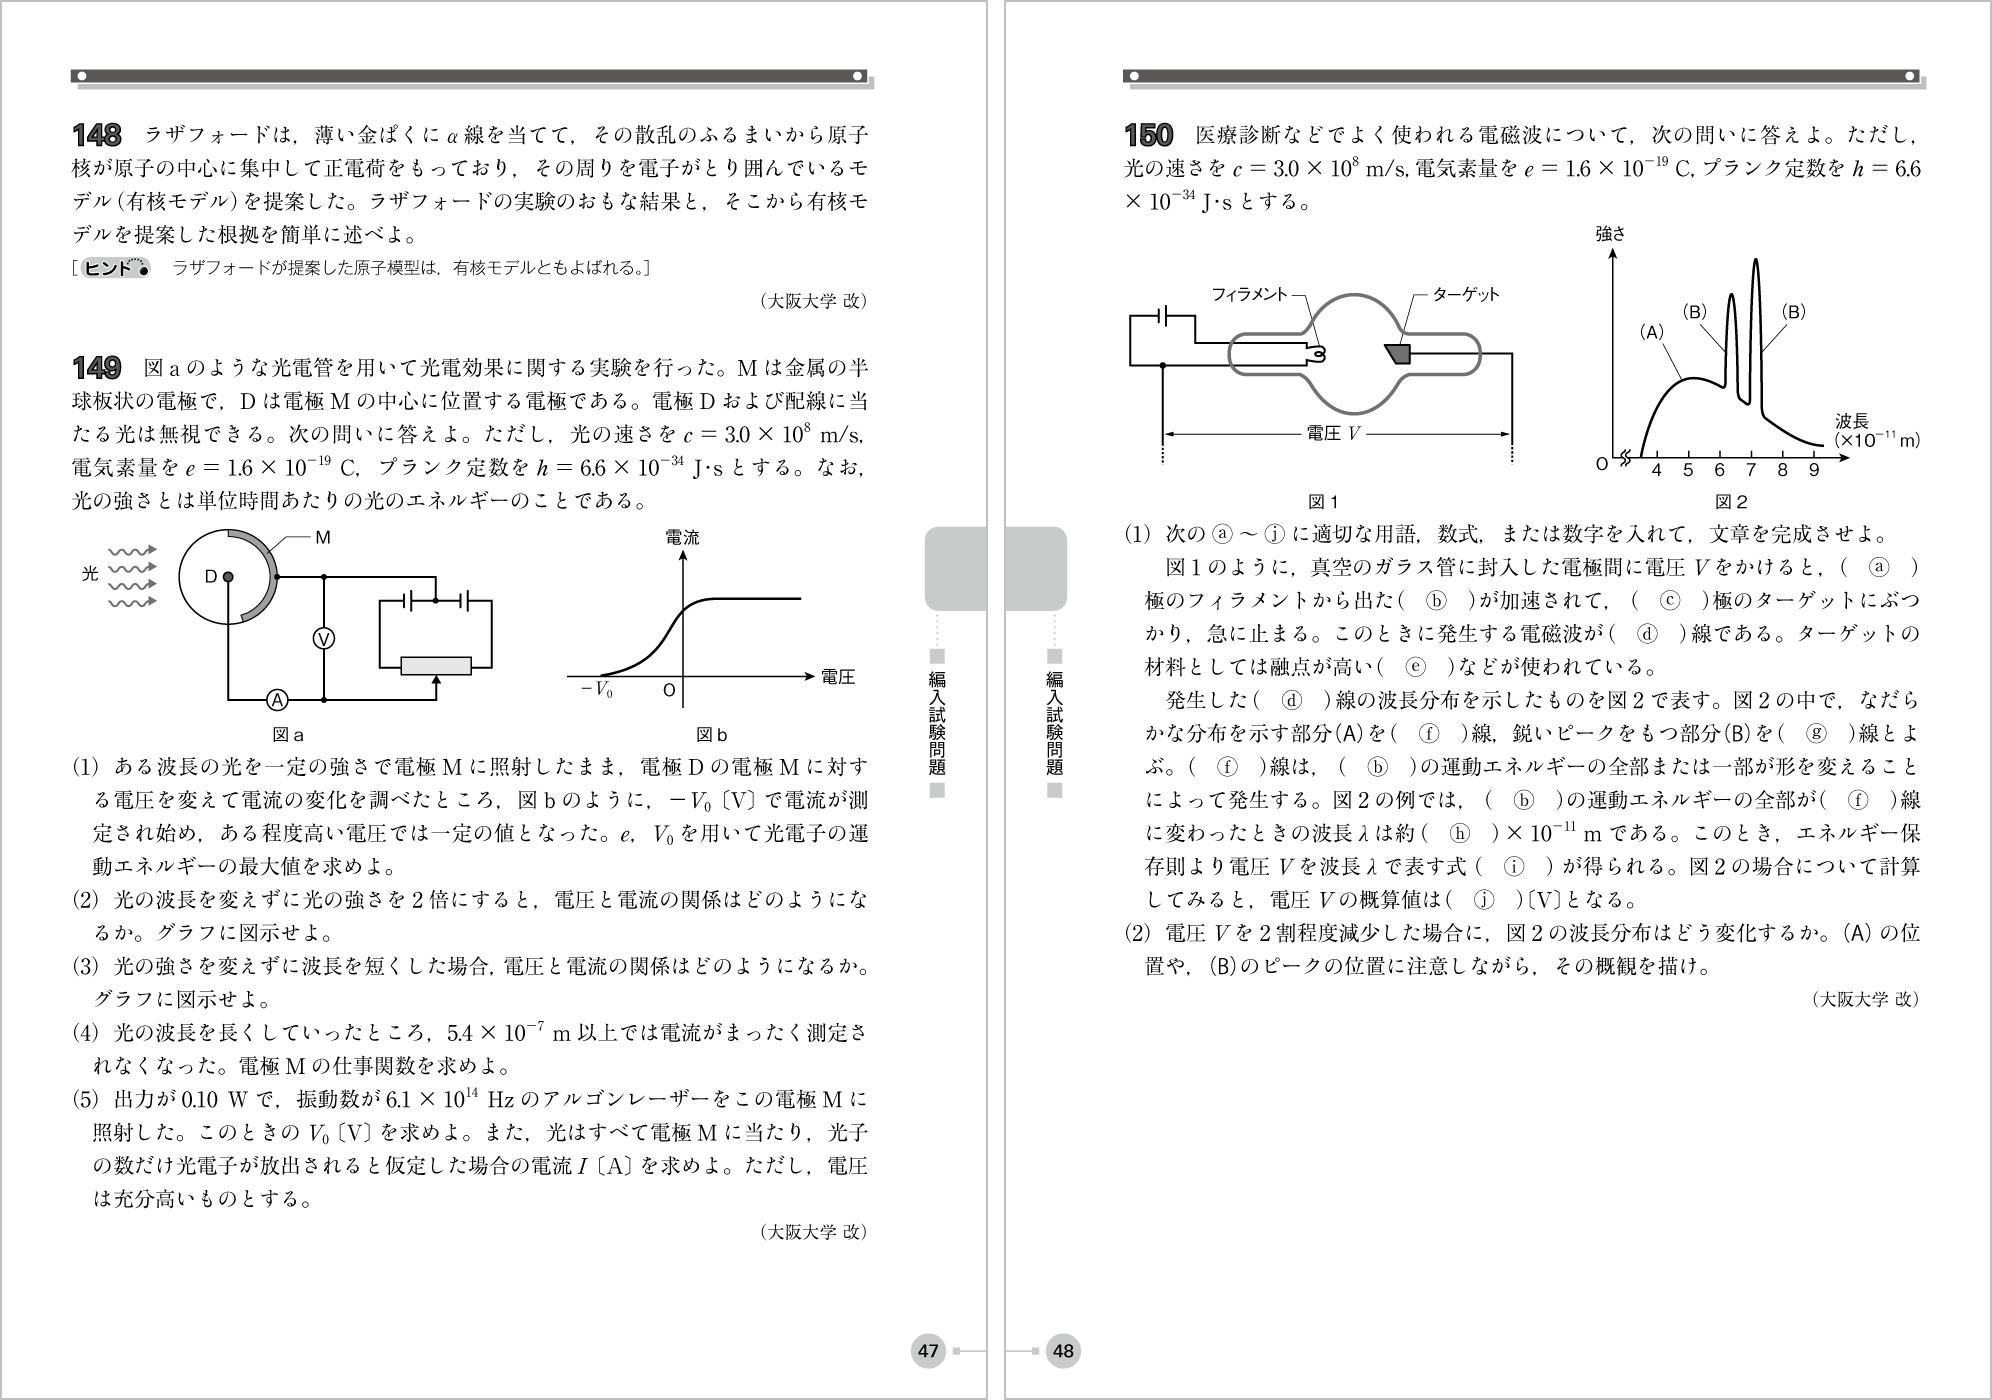 電磁気・原子問題集 p.47-p.48